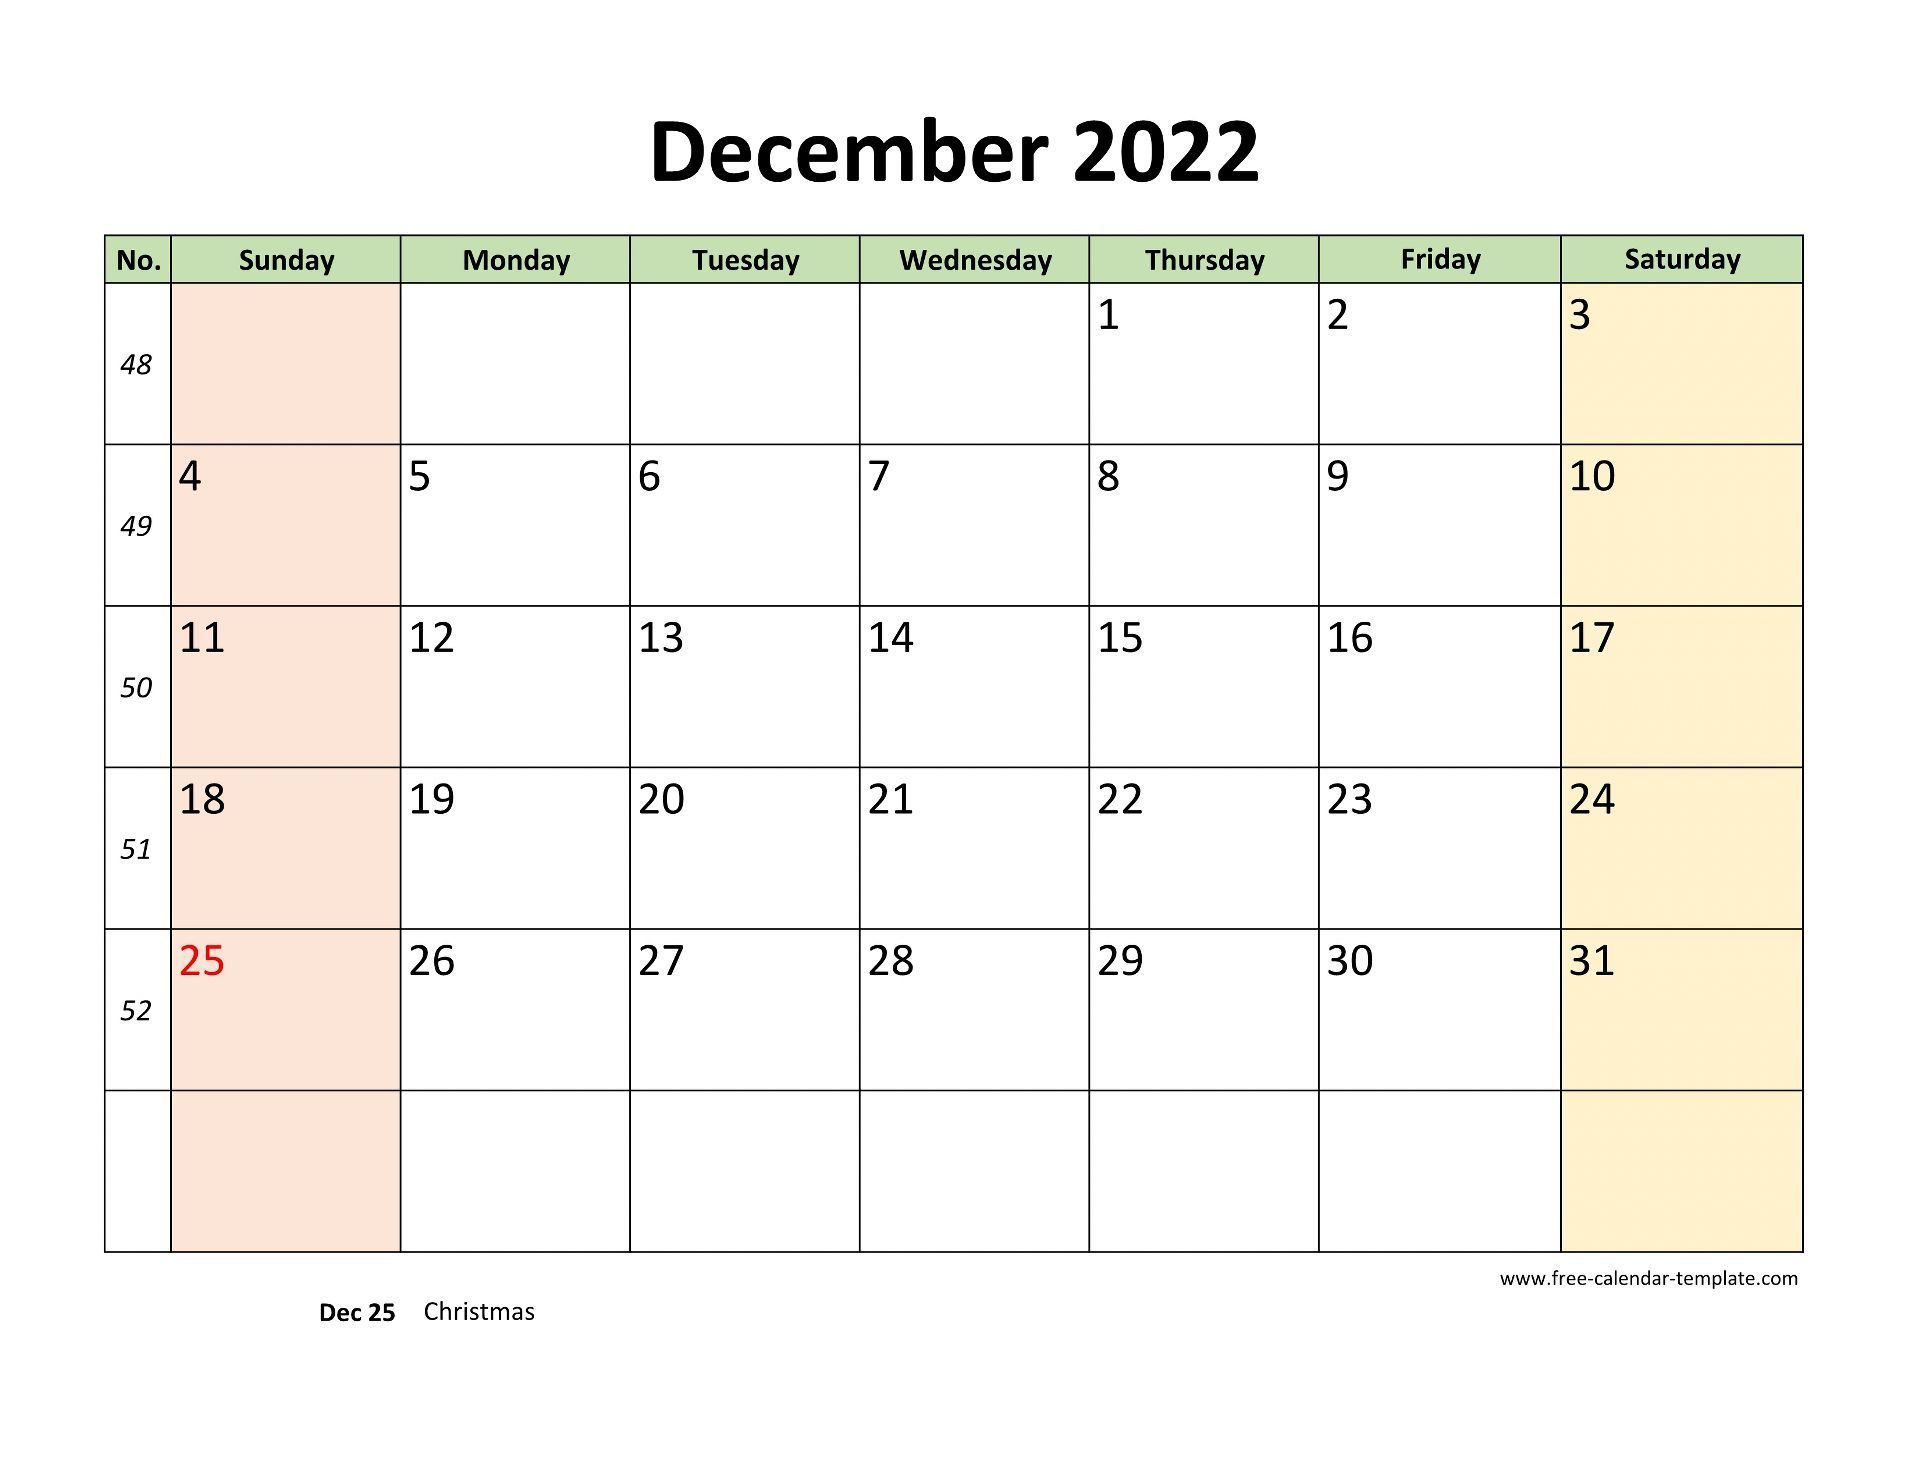 December 2022 Free Calendar Tempplate | Free-Calendar